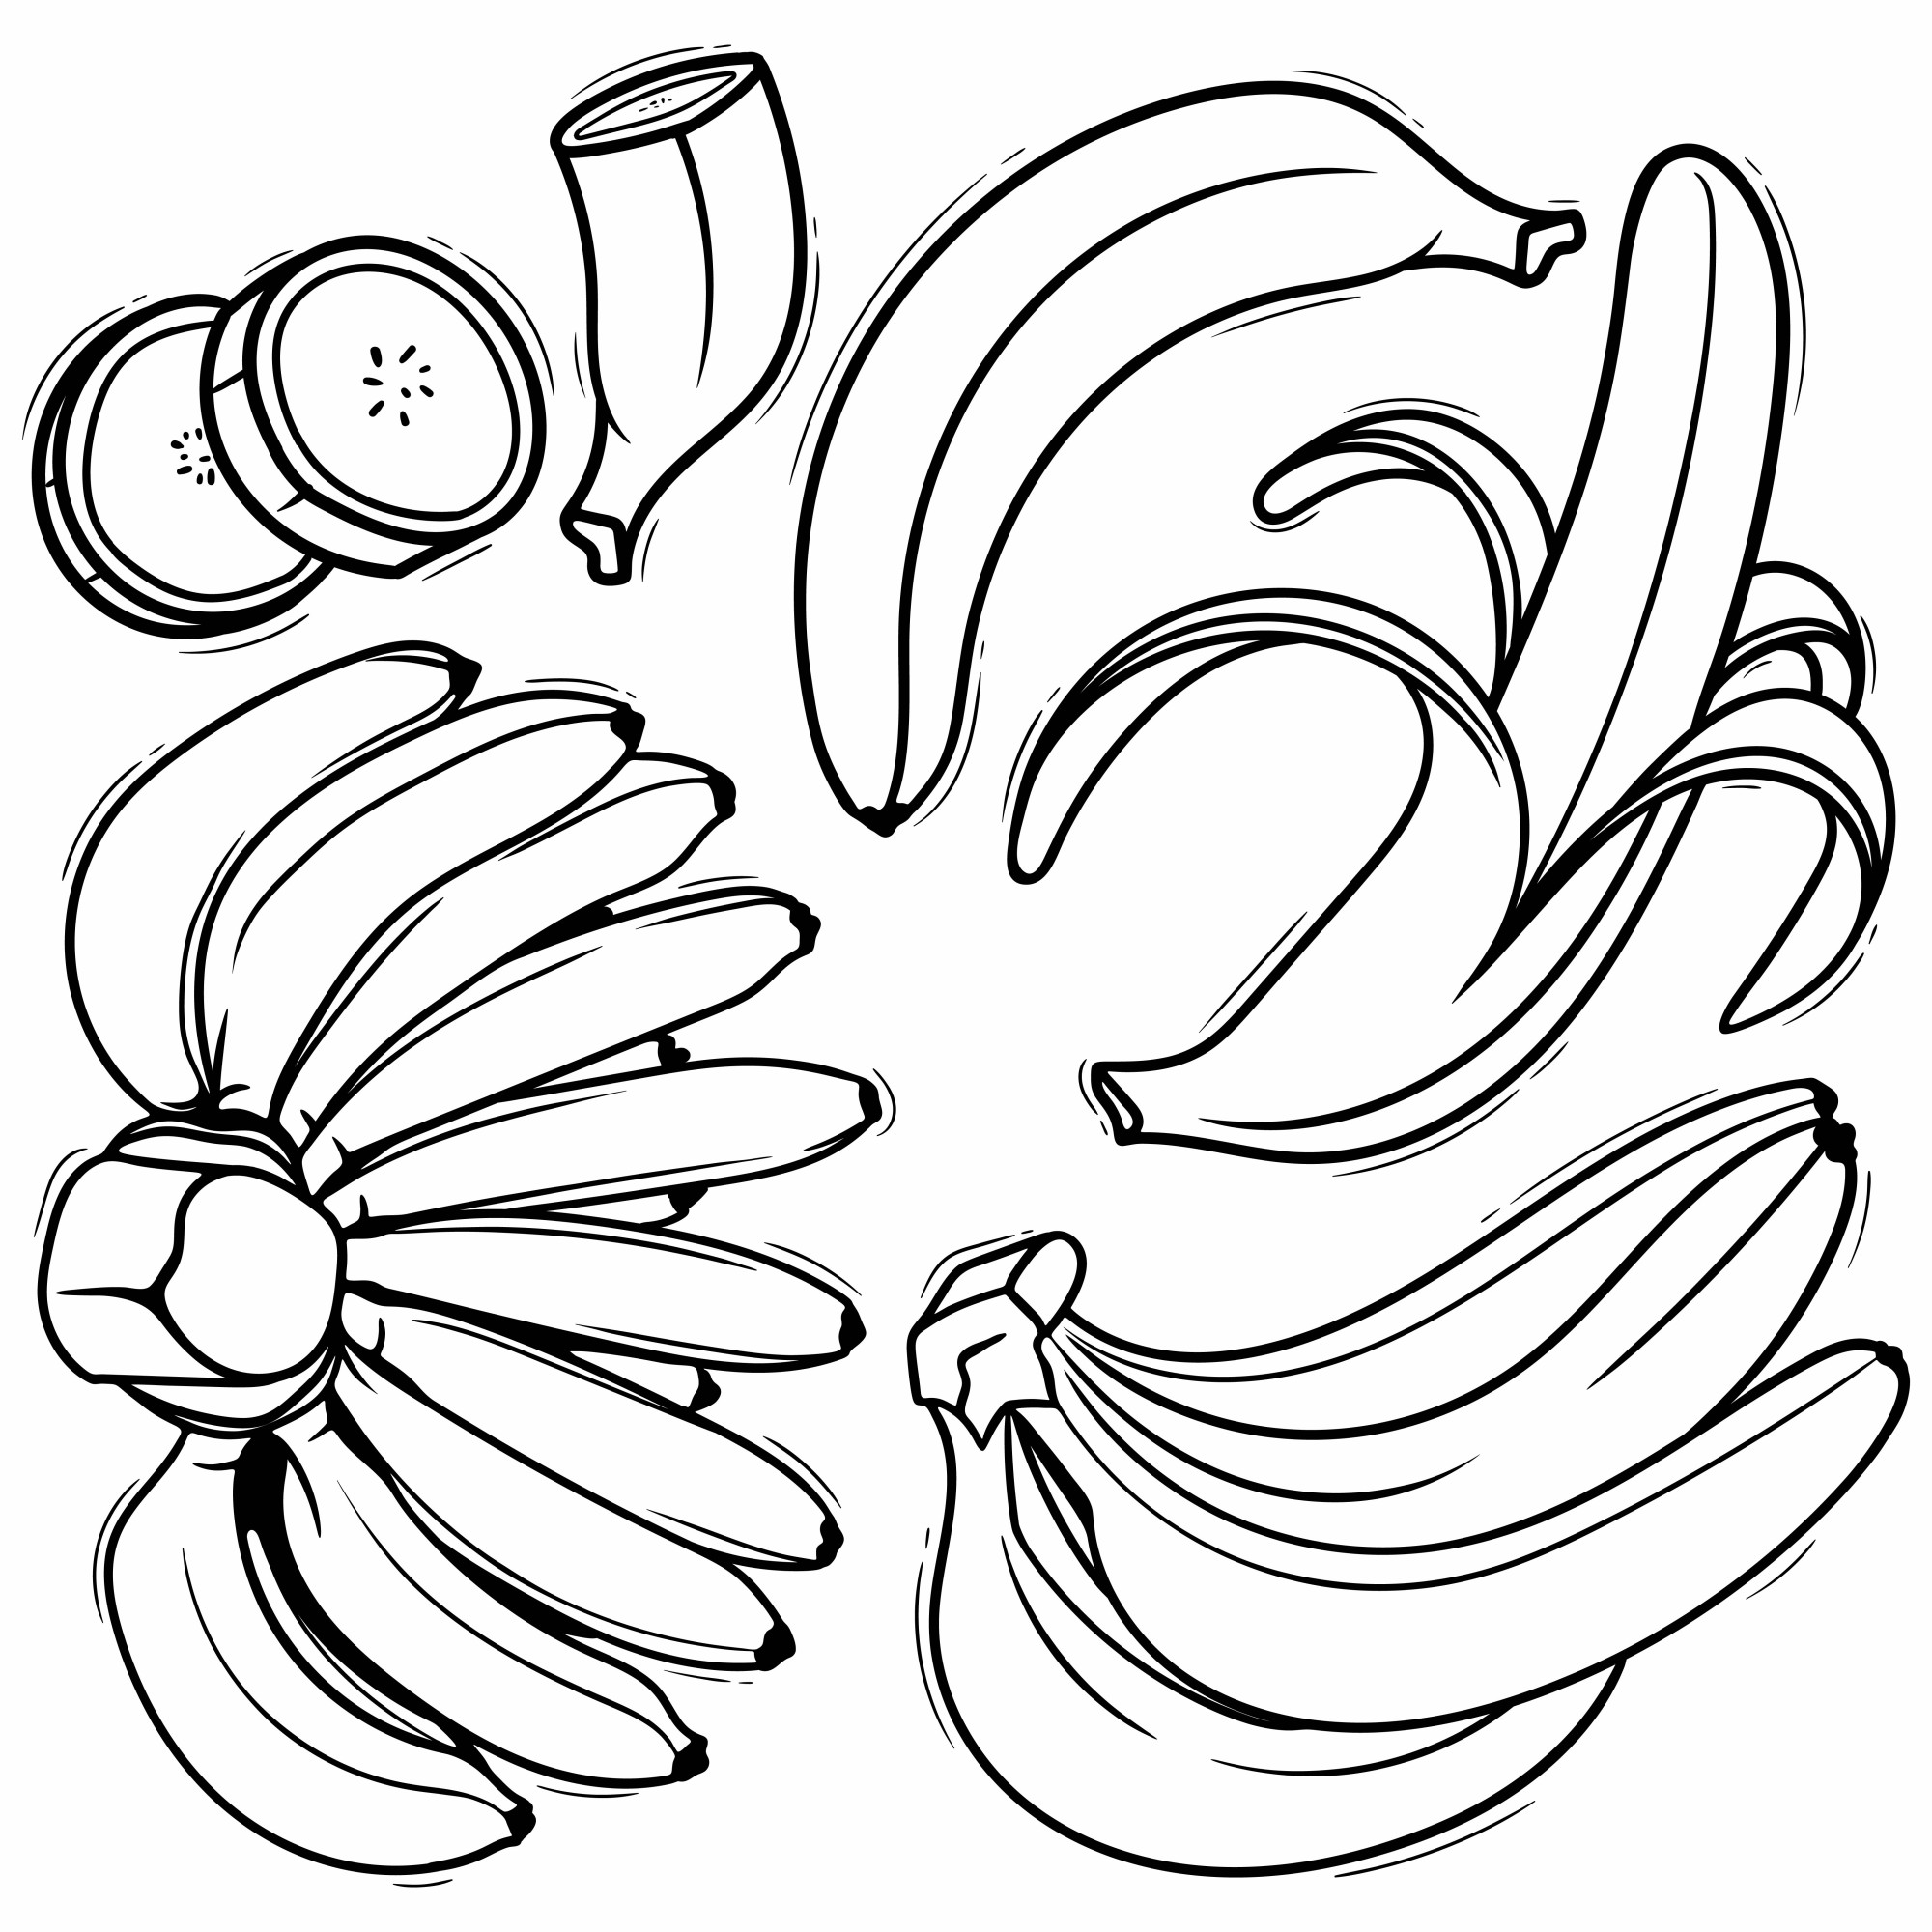 Раскраска для детей: экзотические бананы с дольками и половинкой